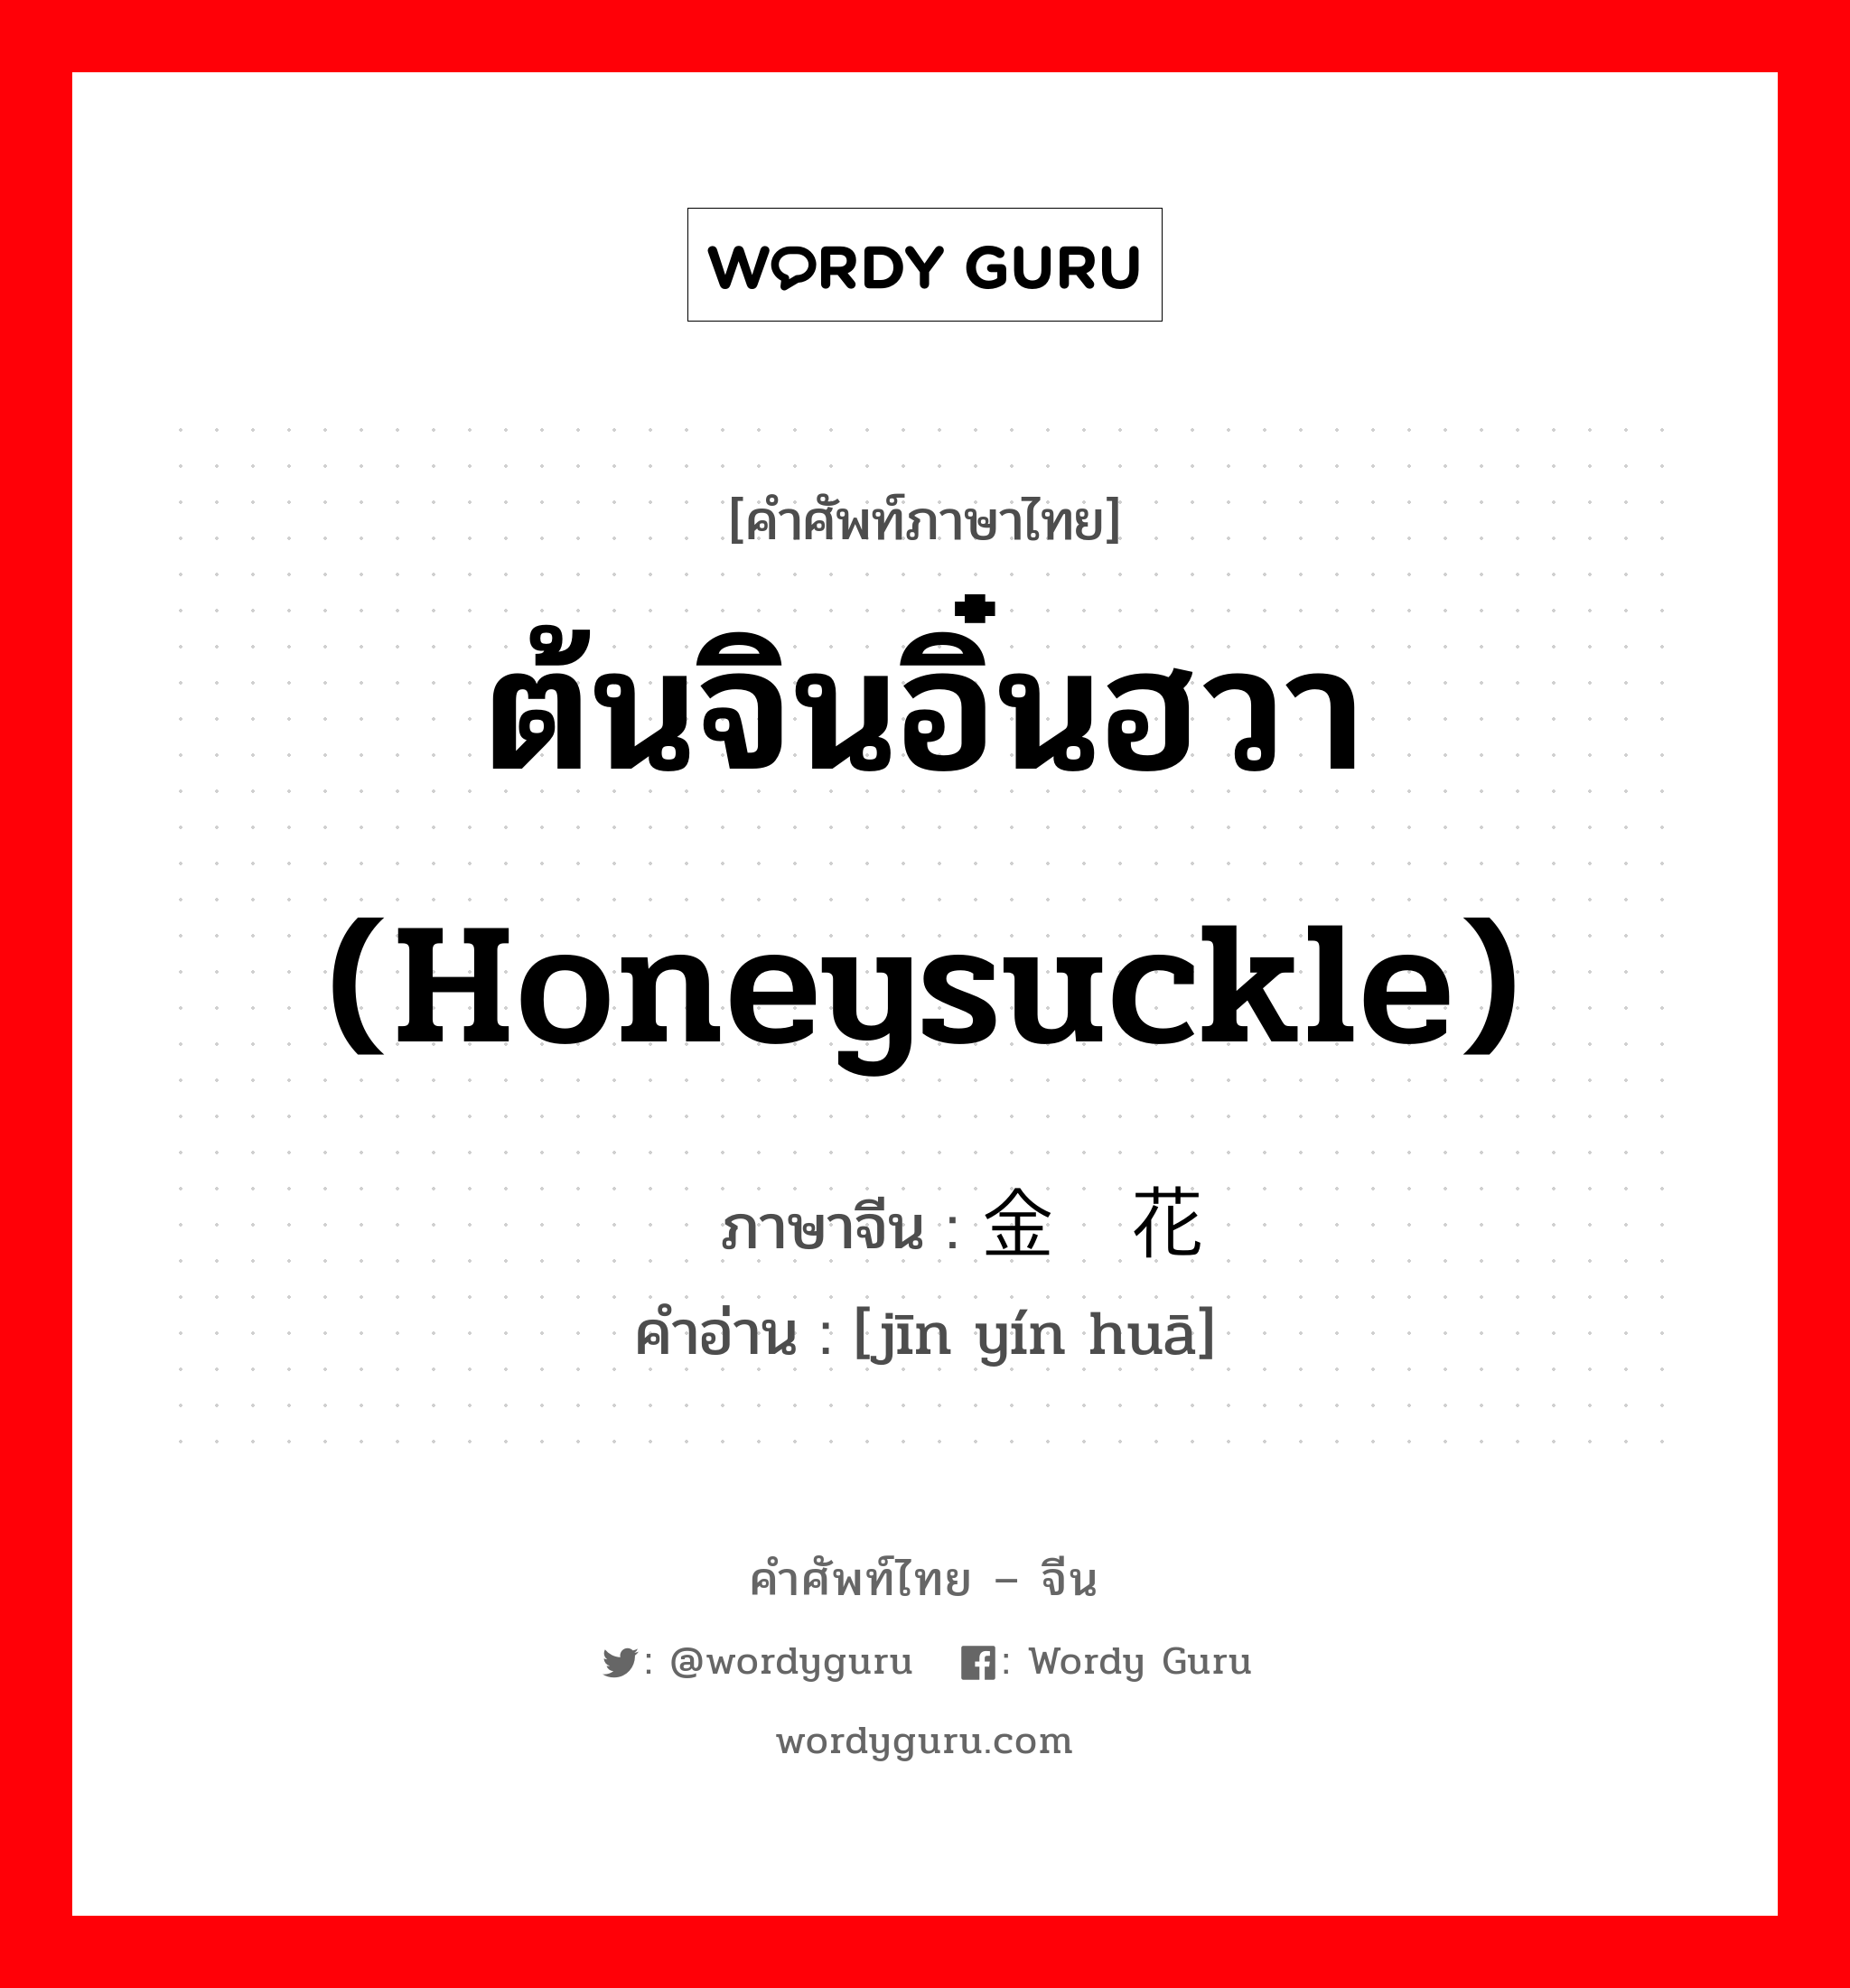 ต้นจินอิ๋นฮวา (honeysuckle) ภาษาจีนคืออะไร, คำศัพท์ภาษาไทย - จีน ต้นจินอิ๋นฮวา (honeysuckle) ภาษาจีน 金银花 คำอ่าน [jīn yín huā]